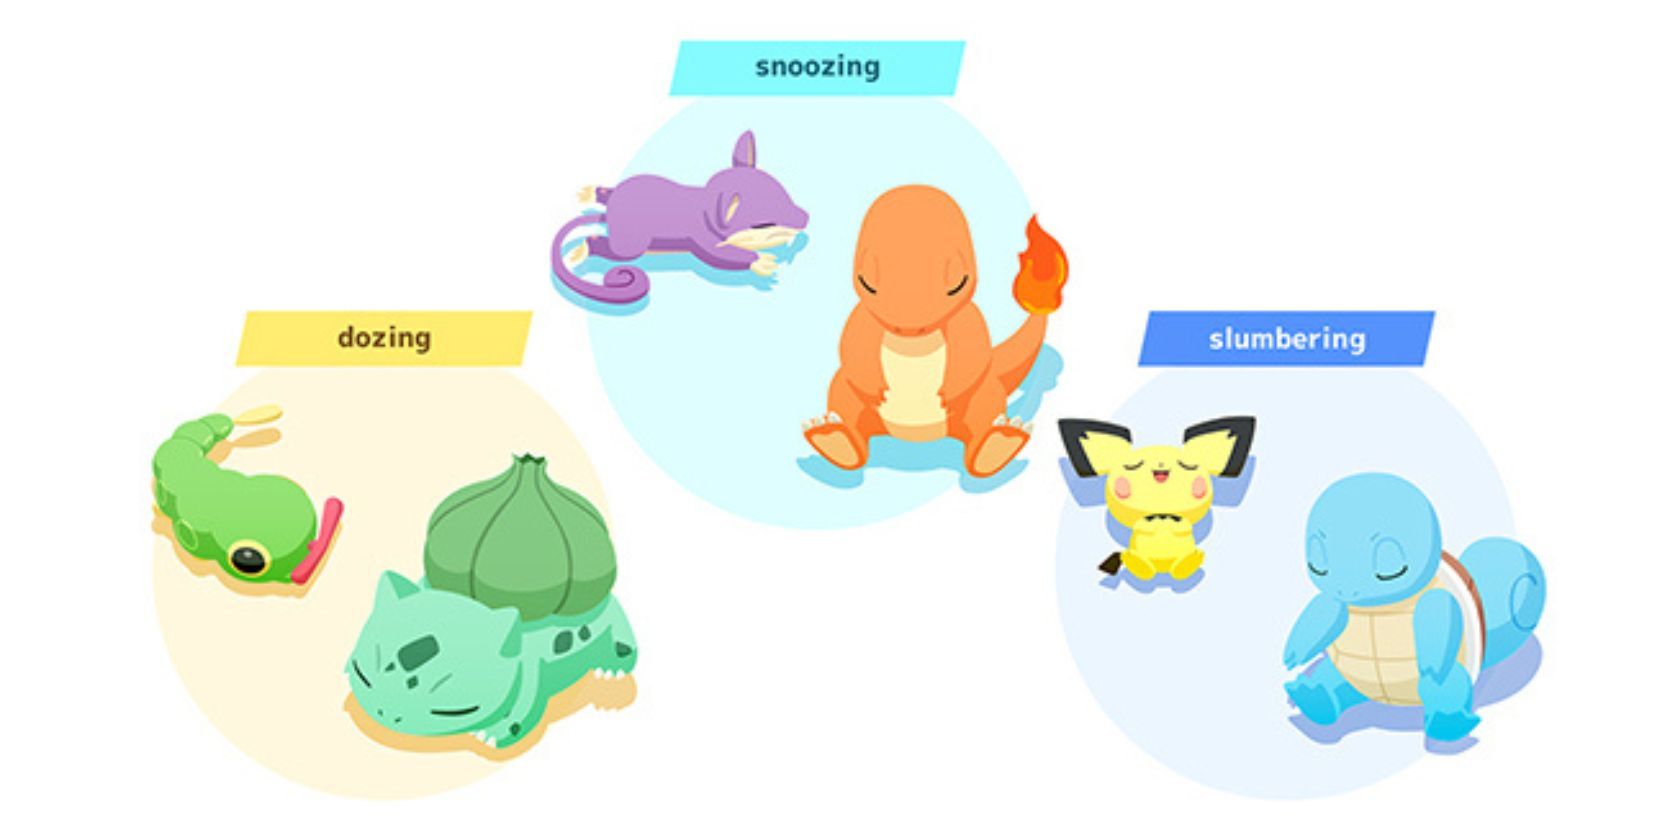 Pokemon Sleep Sleep Cycle Examples Dozing Snoozing Slumbering